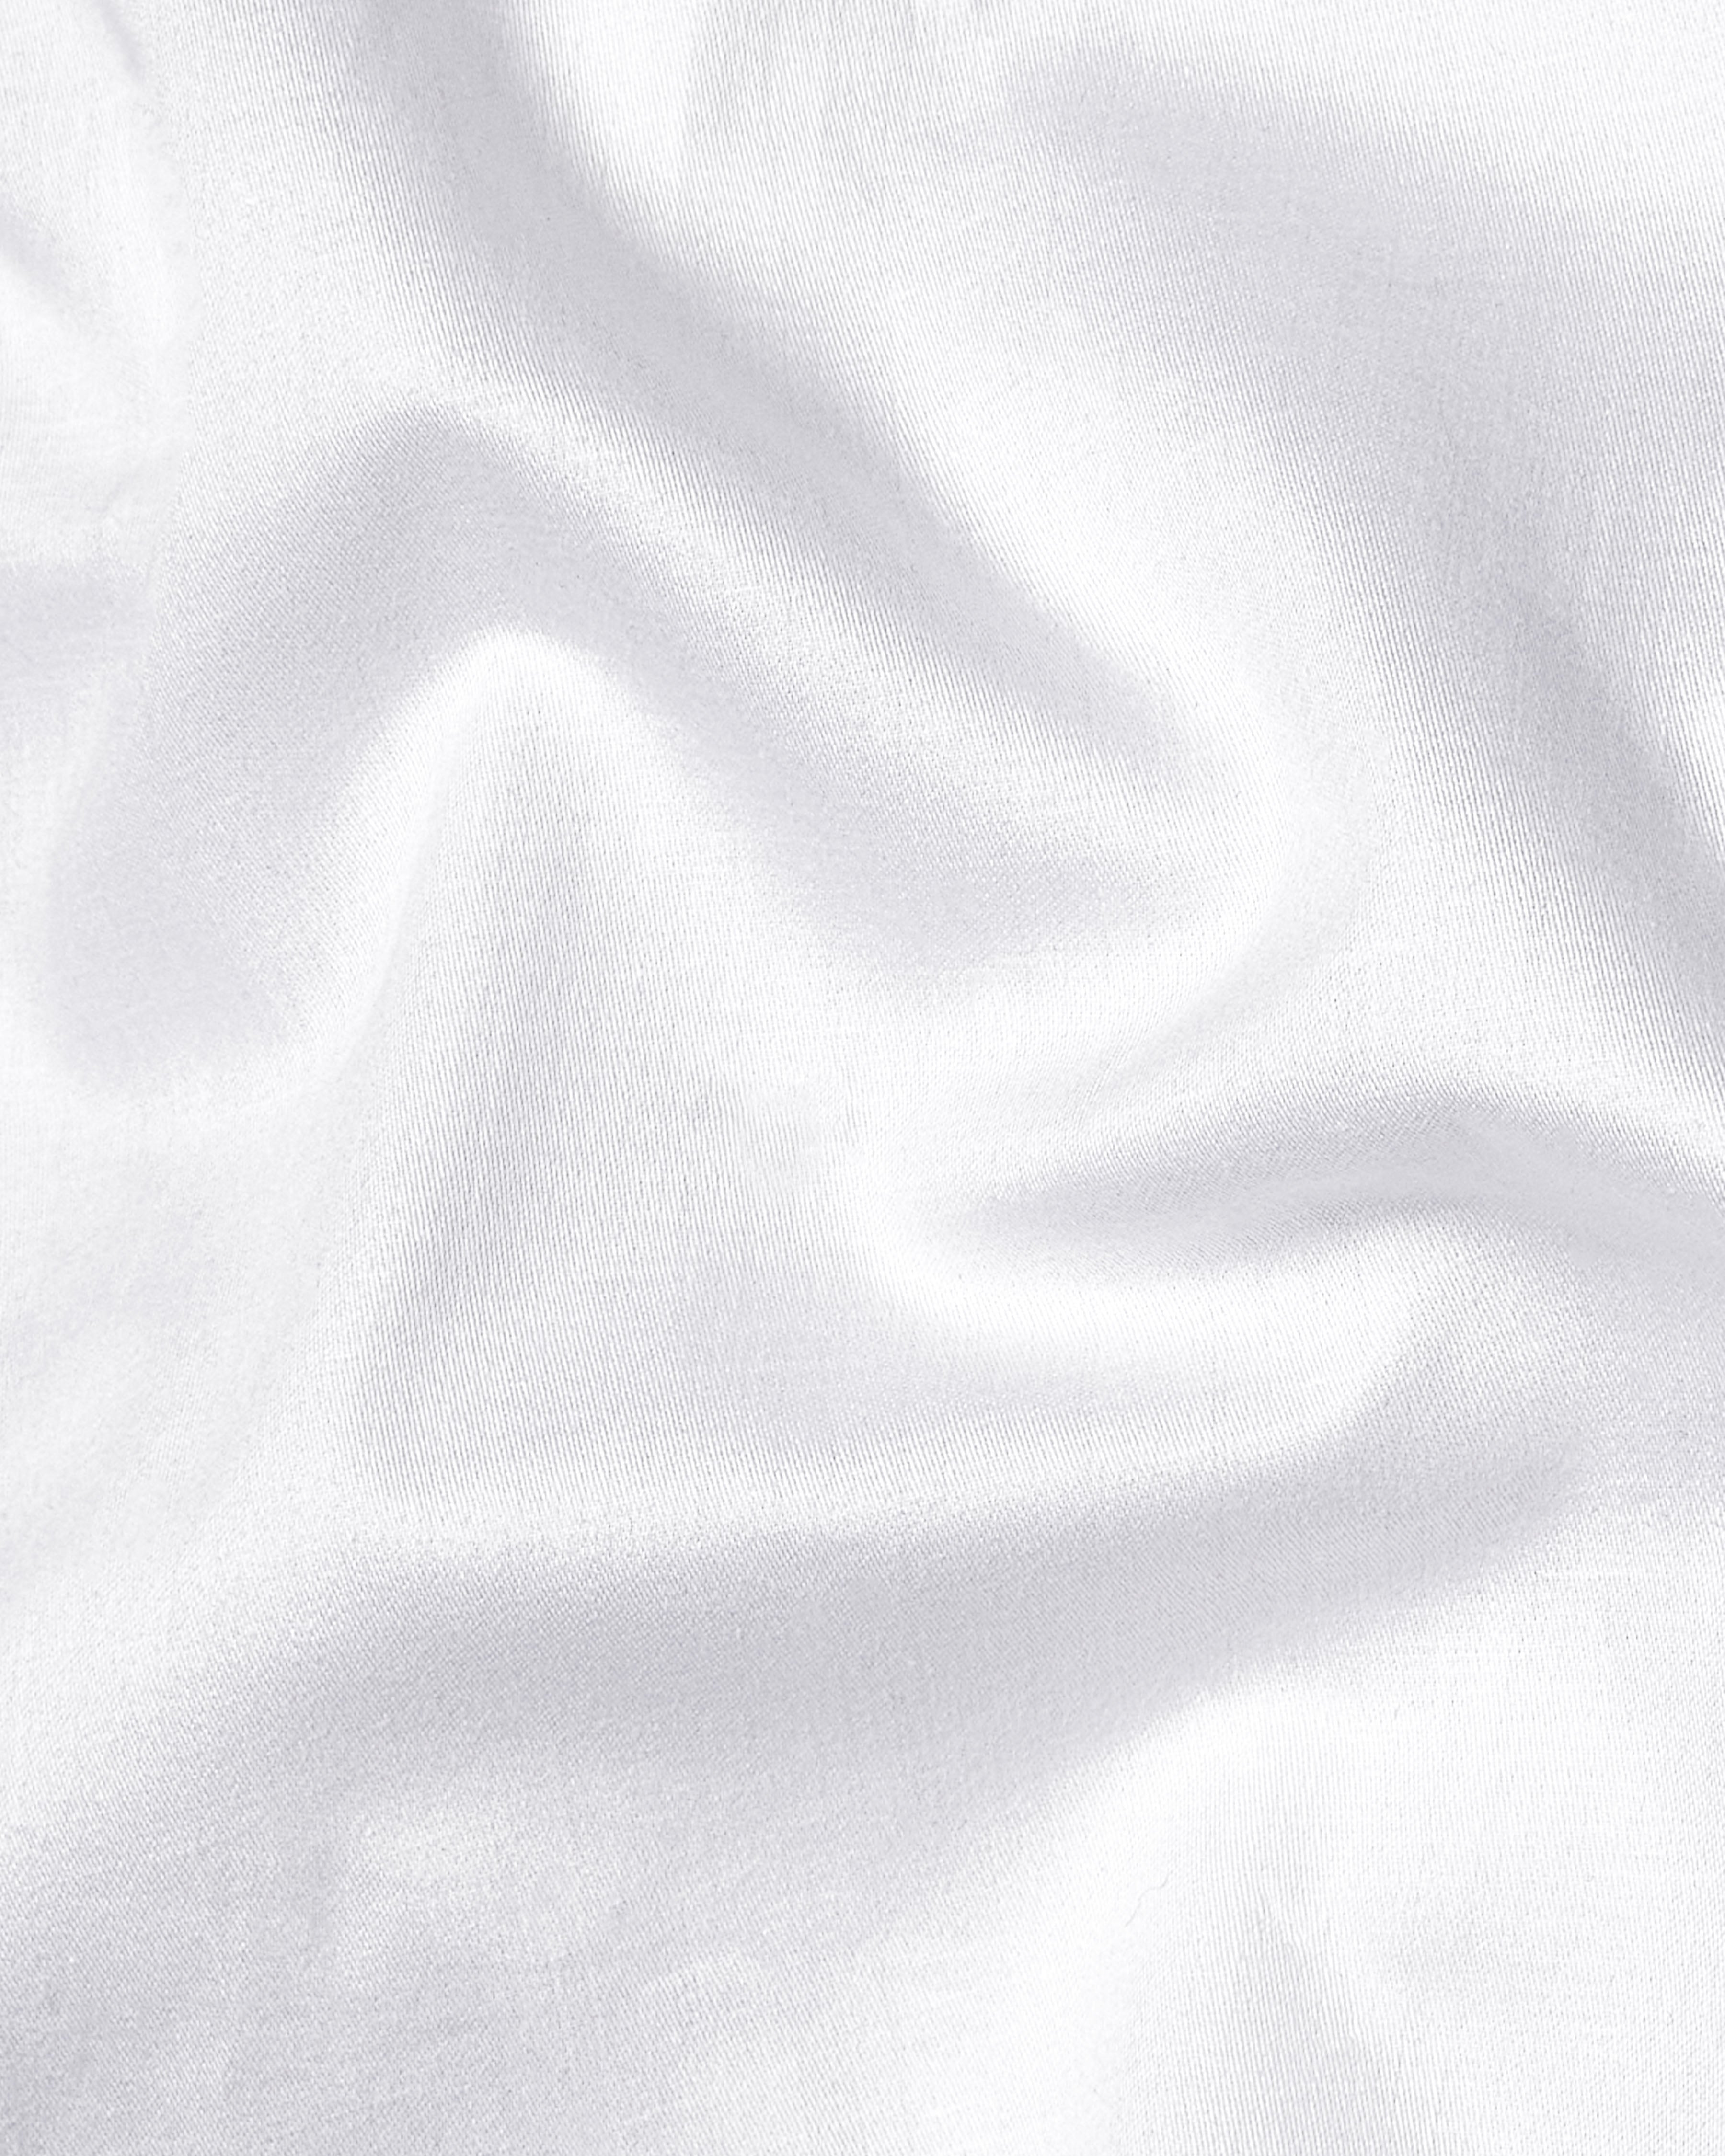 Bright White Subtle Sheen Tiger Embroidered Super Soft Premium Cotton Shirt 8937-BLK-E015-38, 8937-BLK-E015-H-38, 8937-BLK-E015-39, 8937-BLK-E015-H-39, 8937-BLK-E015-40, 8937-BLK-E015-H-40, 8937-BLK-E015-42, 8937-BLK-E015-H-42, 8937-BLK-E015-44, 8937-BLK-E015-H-44, 8937-BLK-E015-46, 8937-BLK-E015-H-46, 8937-BLK-E015-48, 8937-BLK-E015-H-48, 8937-BLK-E015-50, 8937-BLK-E015-H-50, 8937-BLK-E015-52, 8937-BLK-E015-H-52